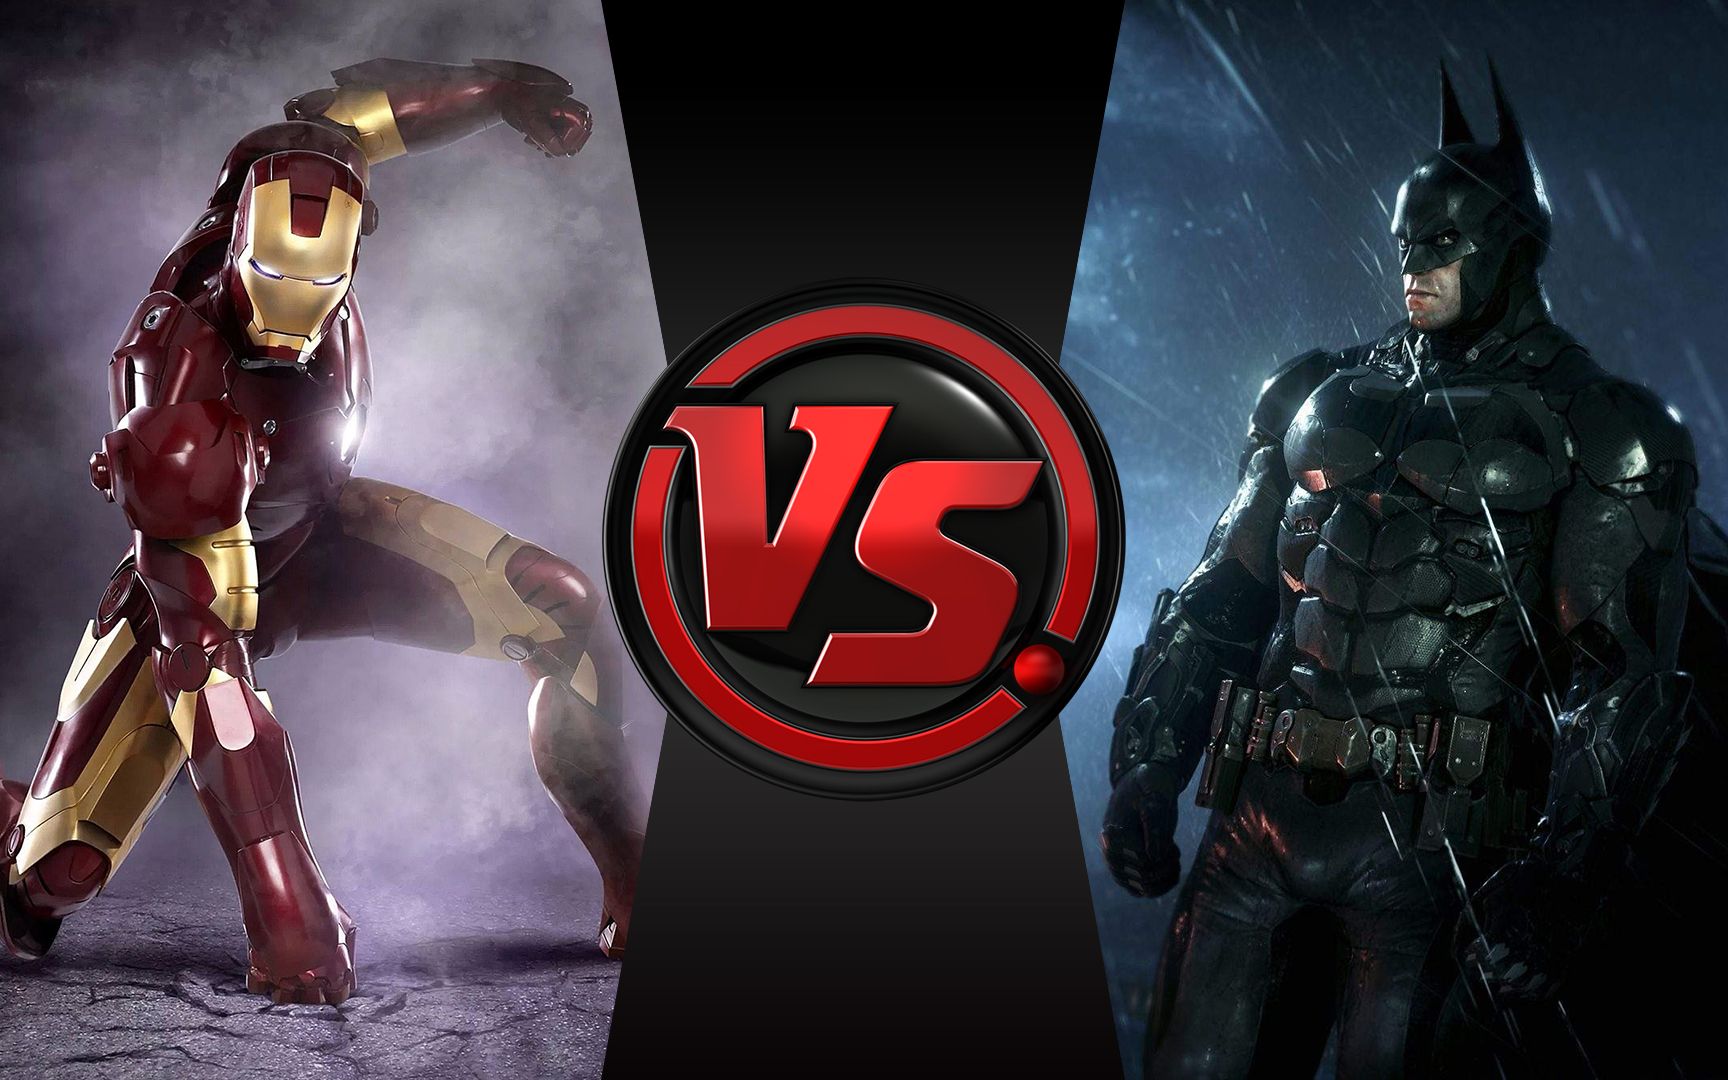 漫威钢铁侠 vs dc蝙蝠侠 2个土豪决斗 到底谁会赢呢